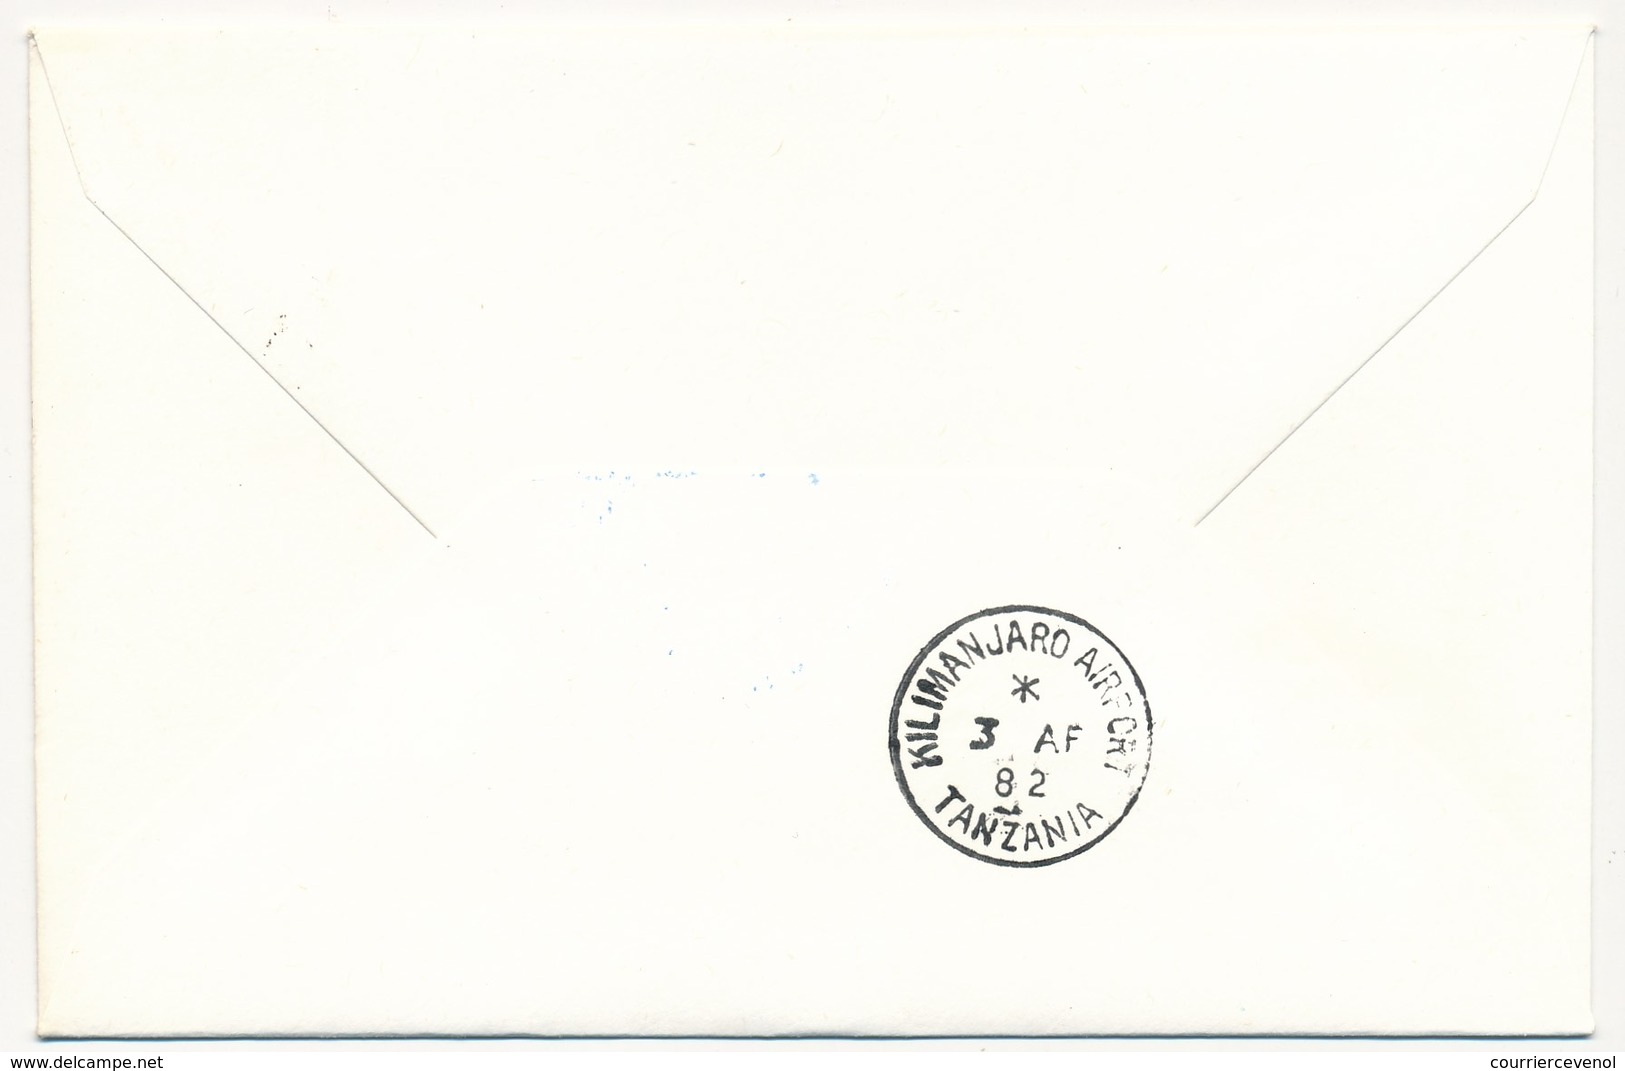 TANZANIE - 2 Enveloppes SABENA - 1ere Liaison Aérienne - KILIMANJARO - BRUXELLES - 3.4.1982 Et Aller - Tanzania (1964-...)